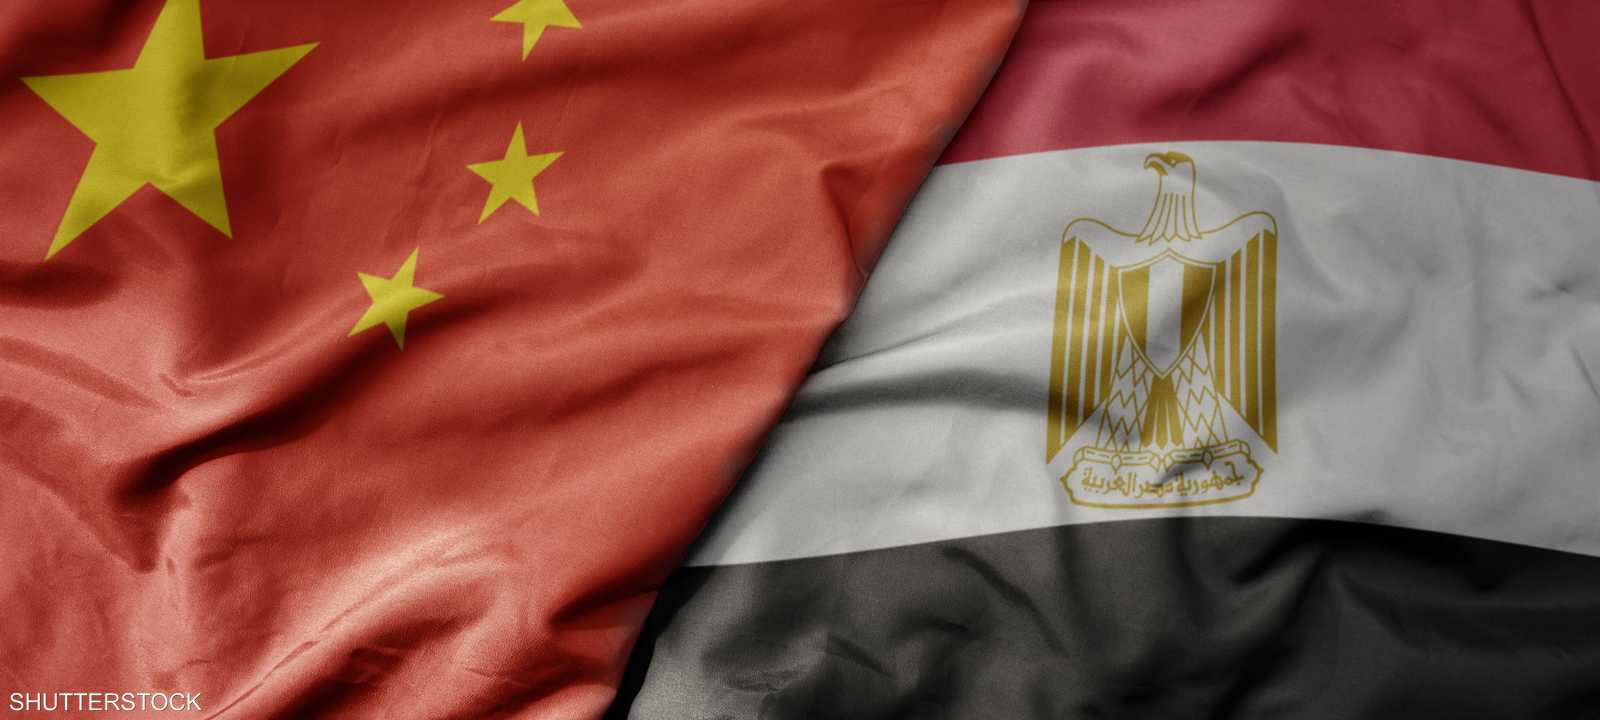 اقتصاد - الصين ومصر